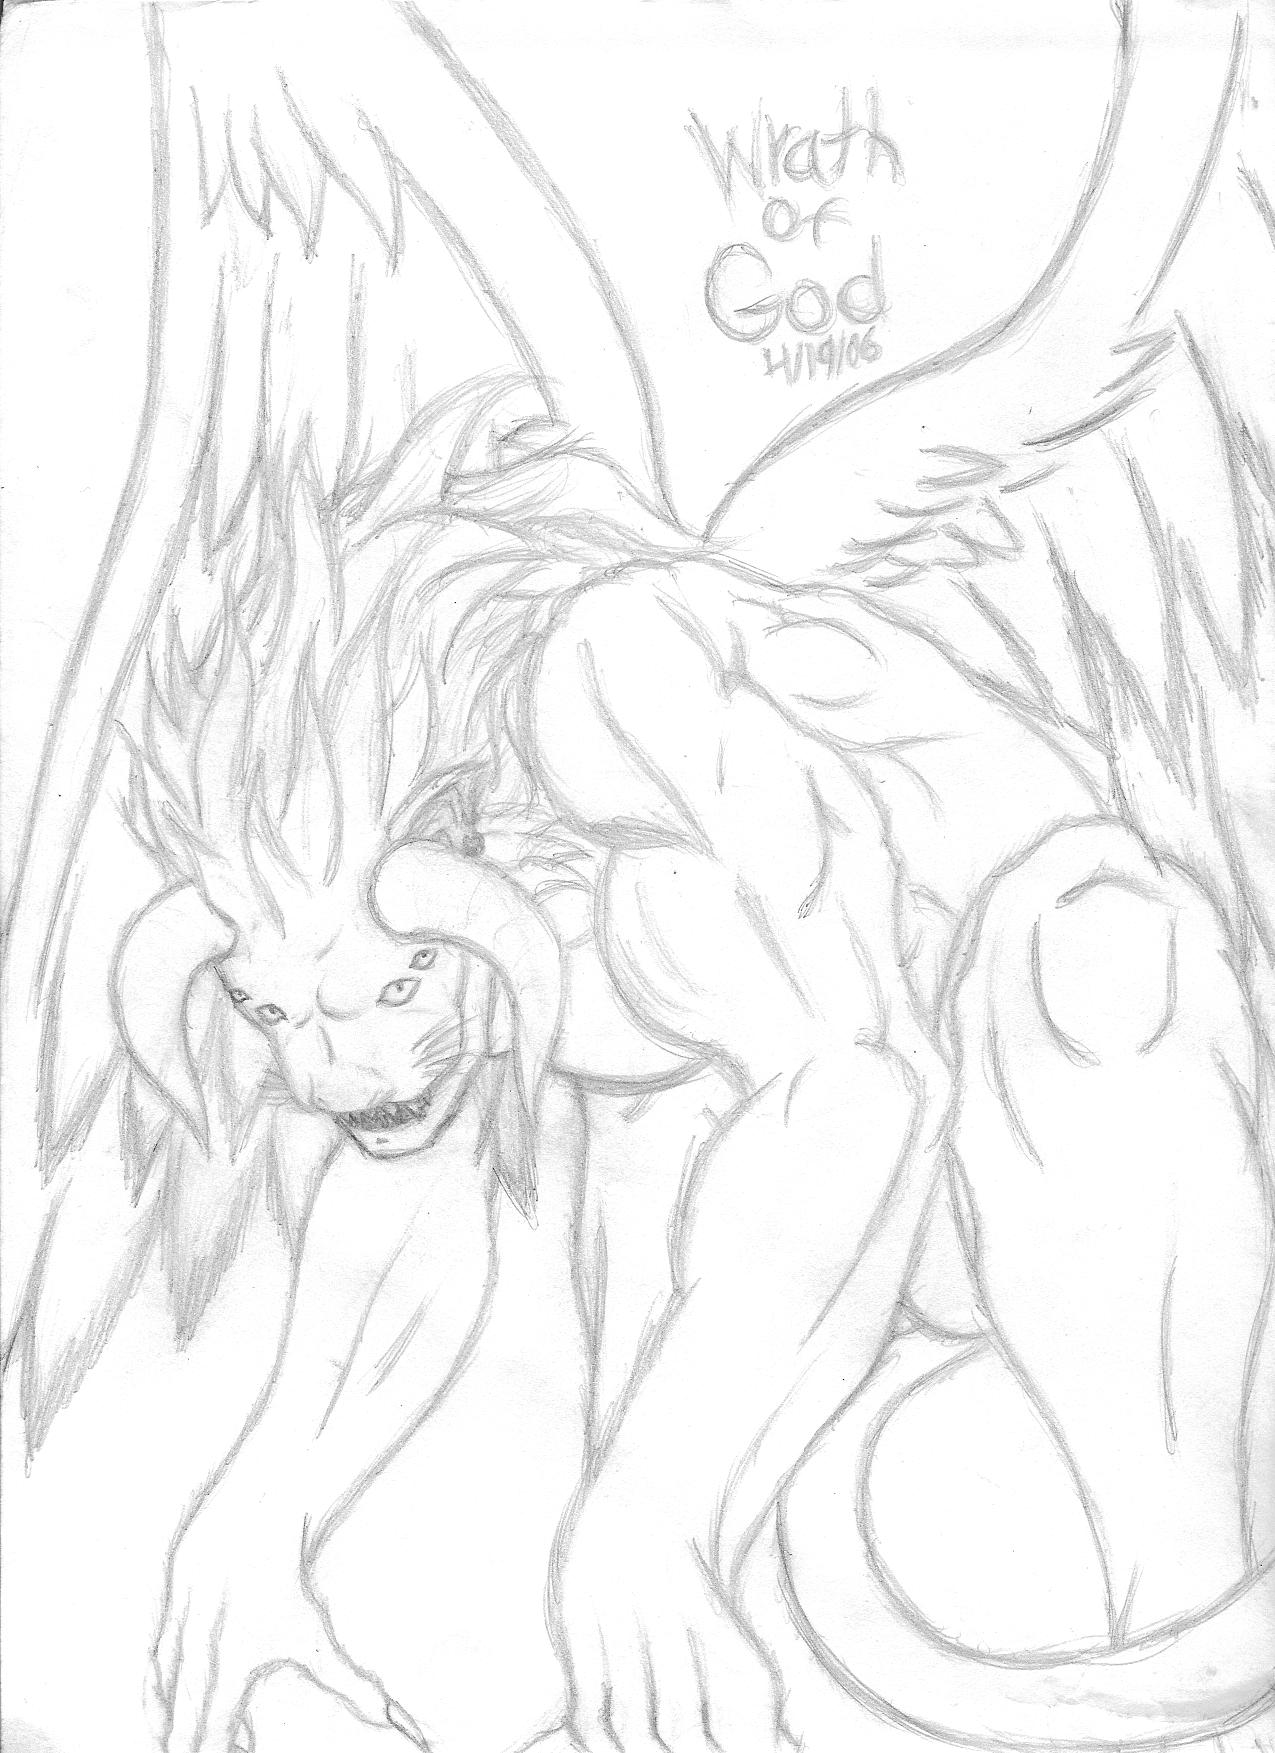 Wrath of God by Zatoichi